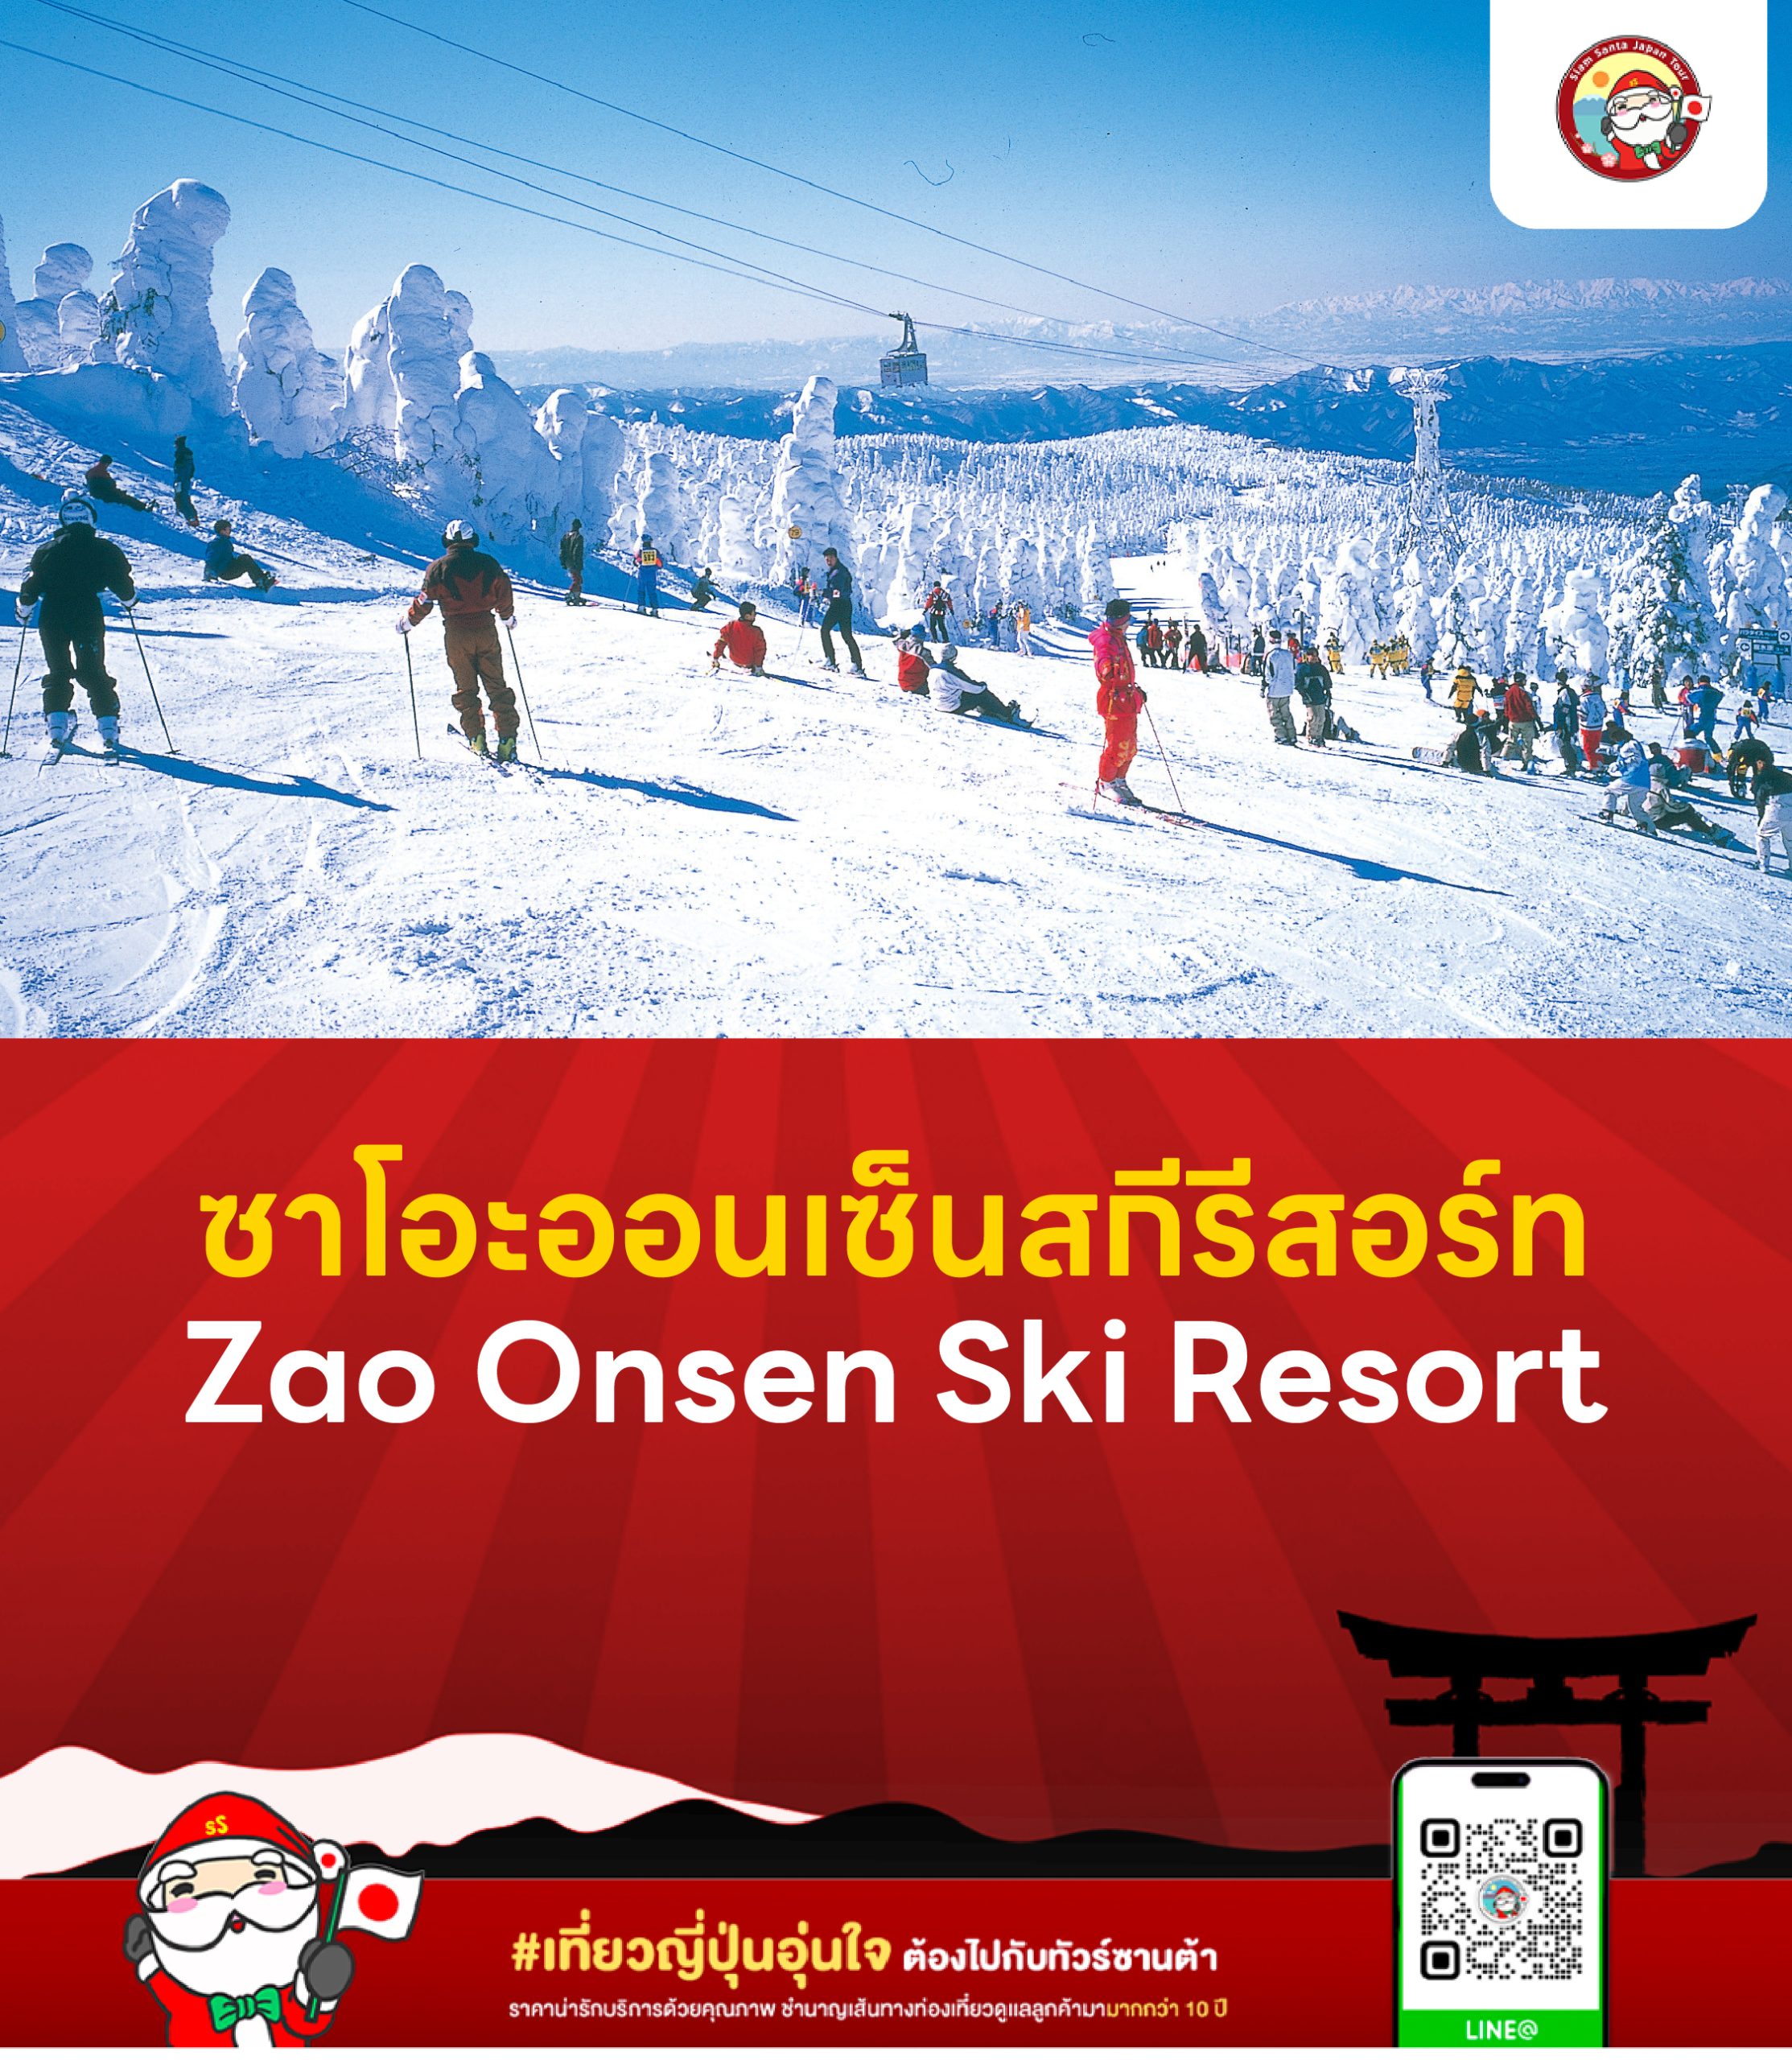 ซาโอะออนเซ็นสกีรีสอร์ท (Zao Onsen Ski Resort)